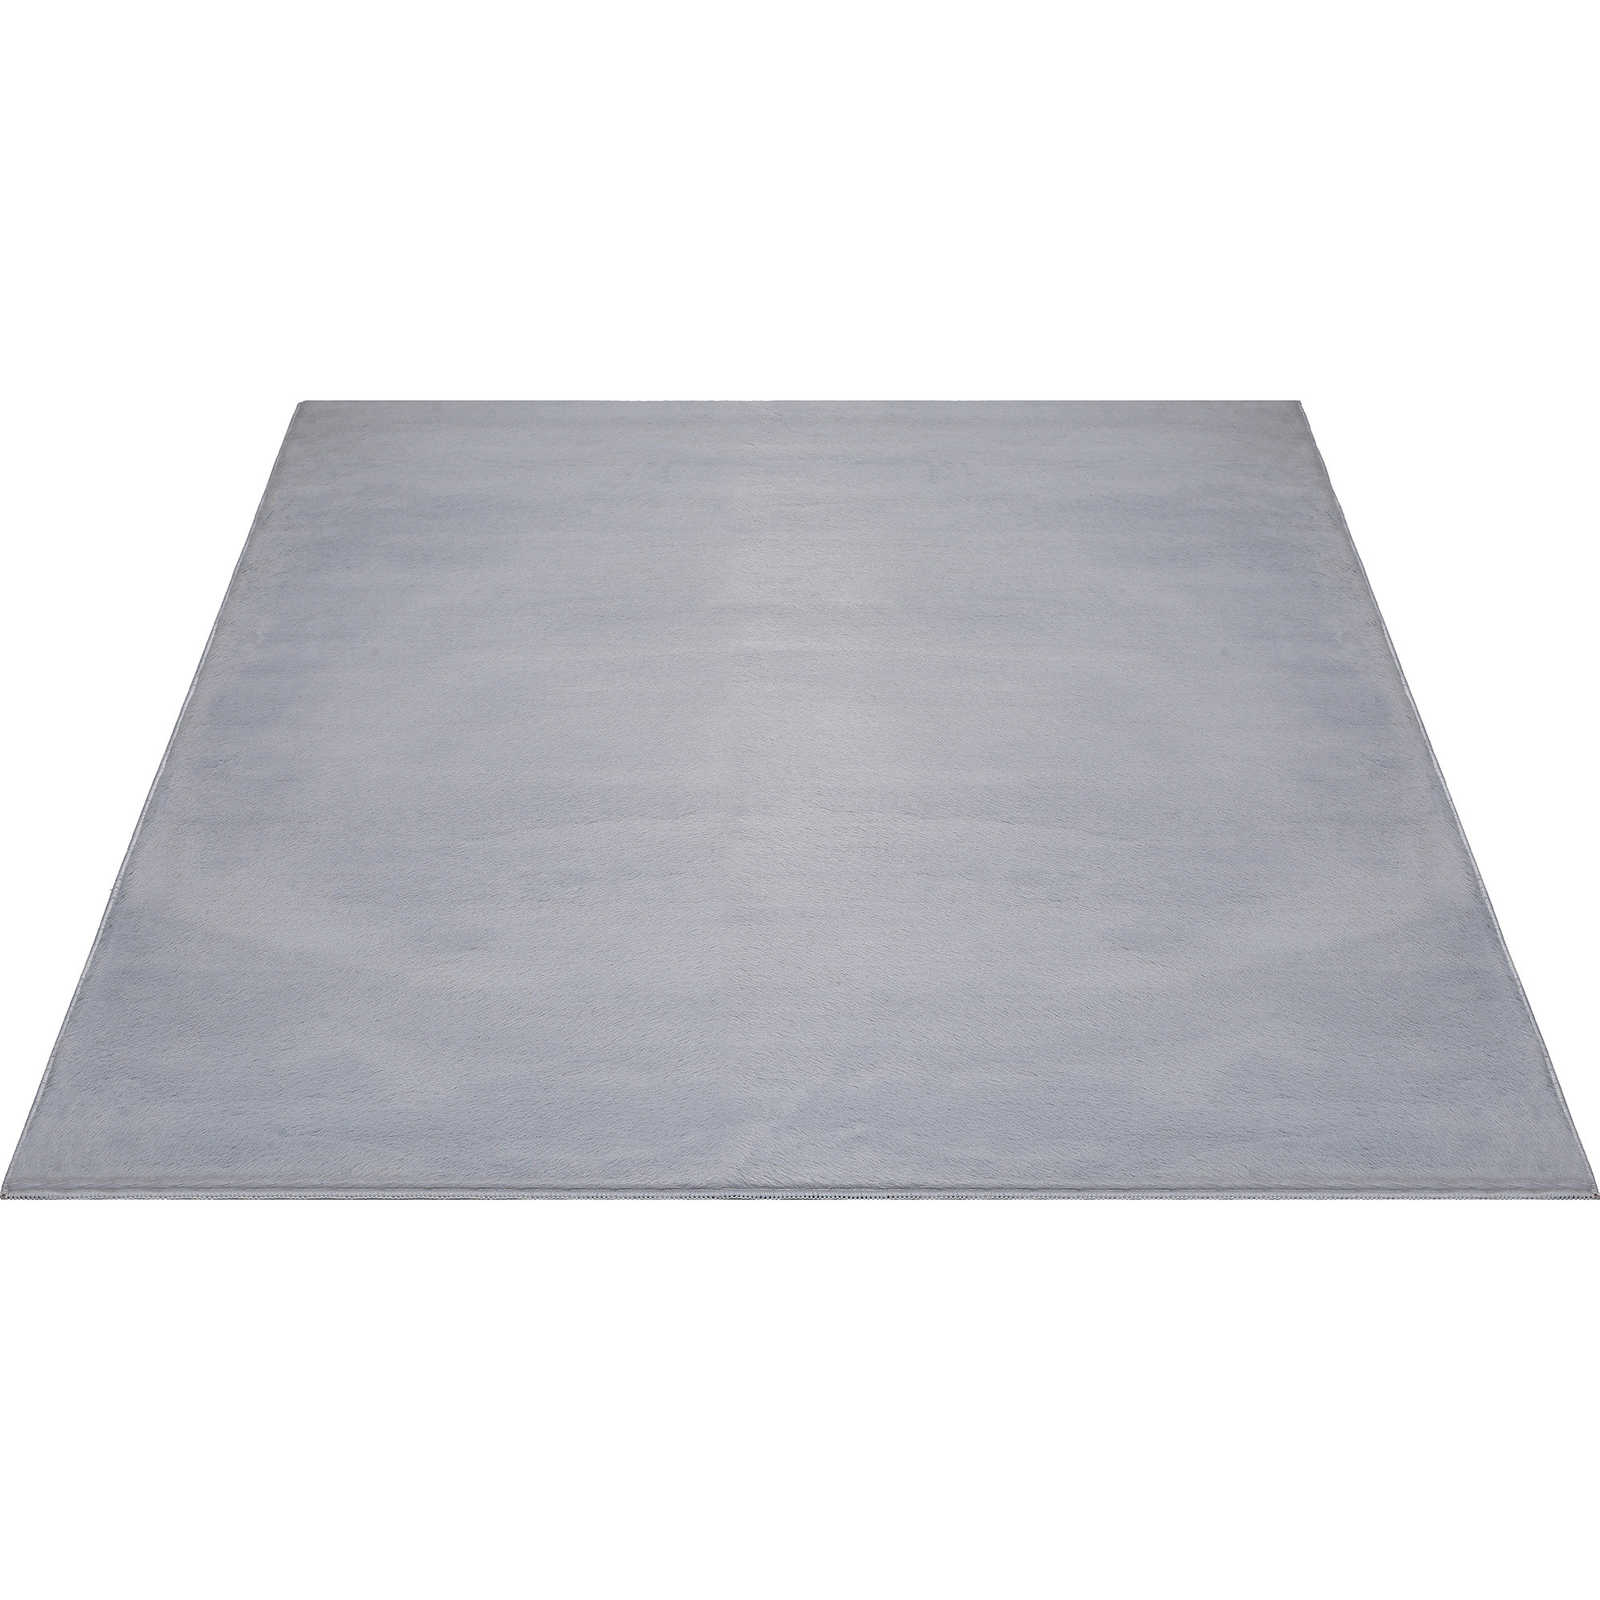 Comfortabel hoogpolig tapijt in zachtgrijs - 340 x 240 cm
